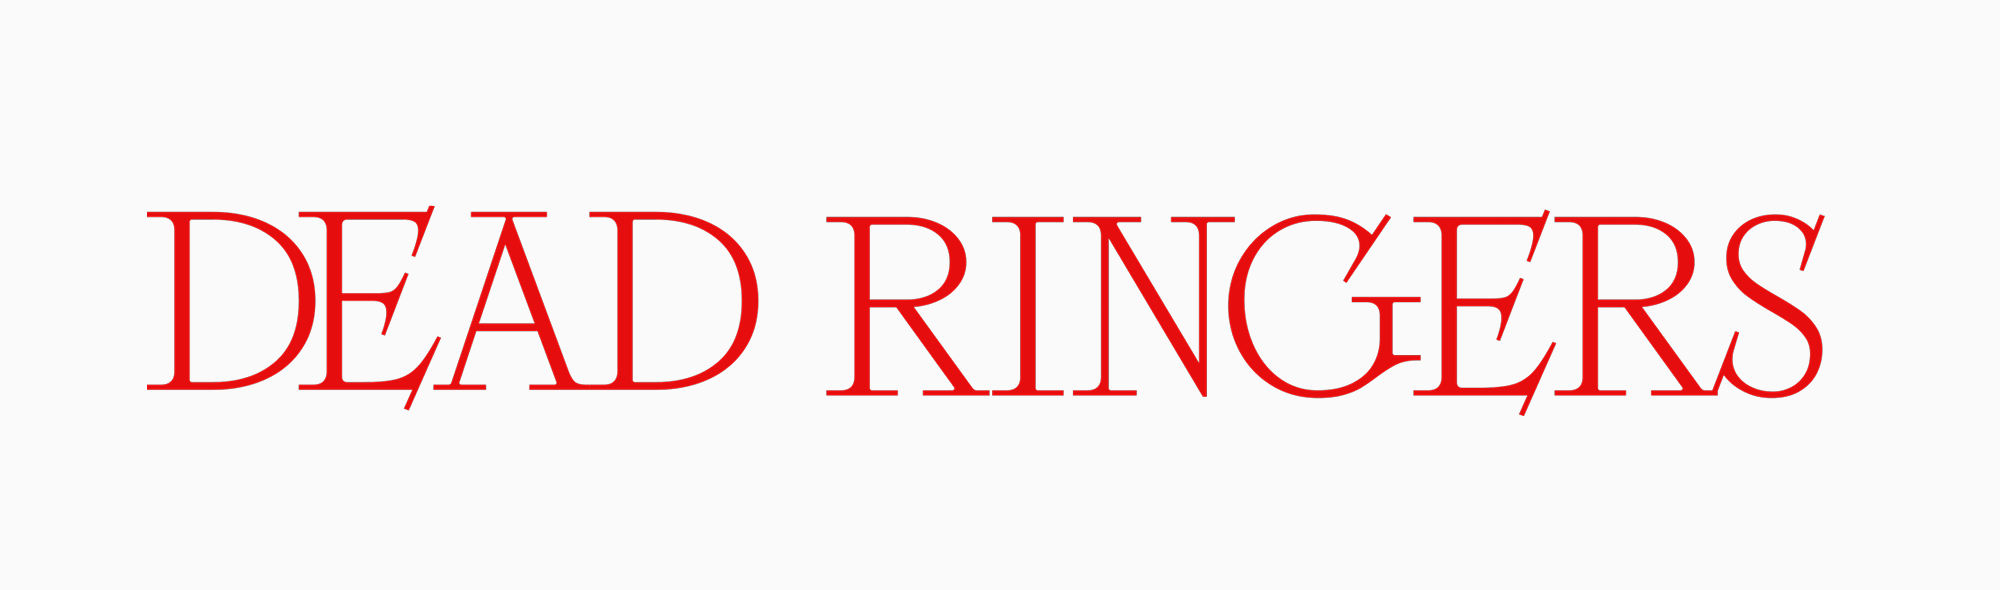 Dead Ringers series logo